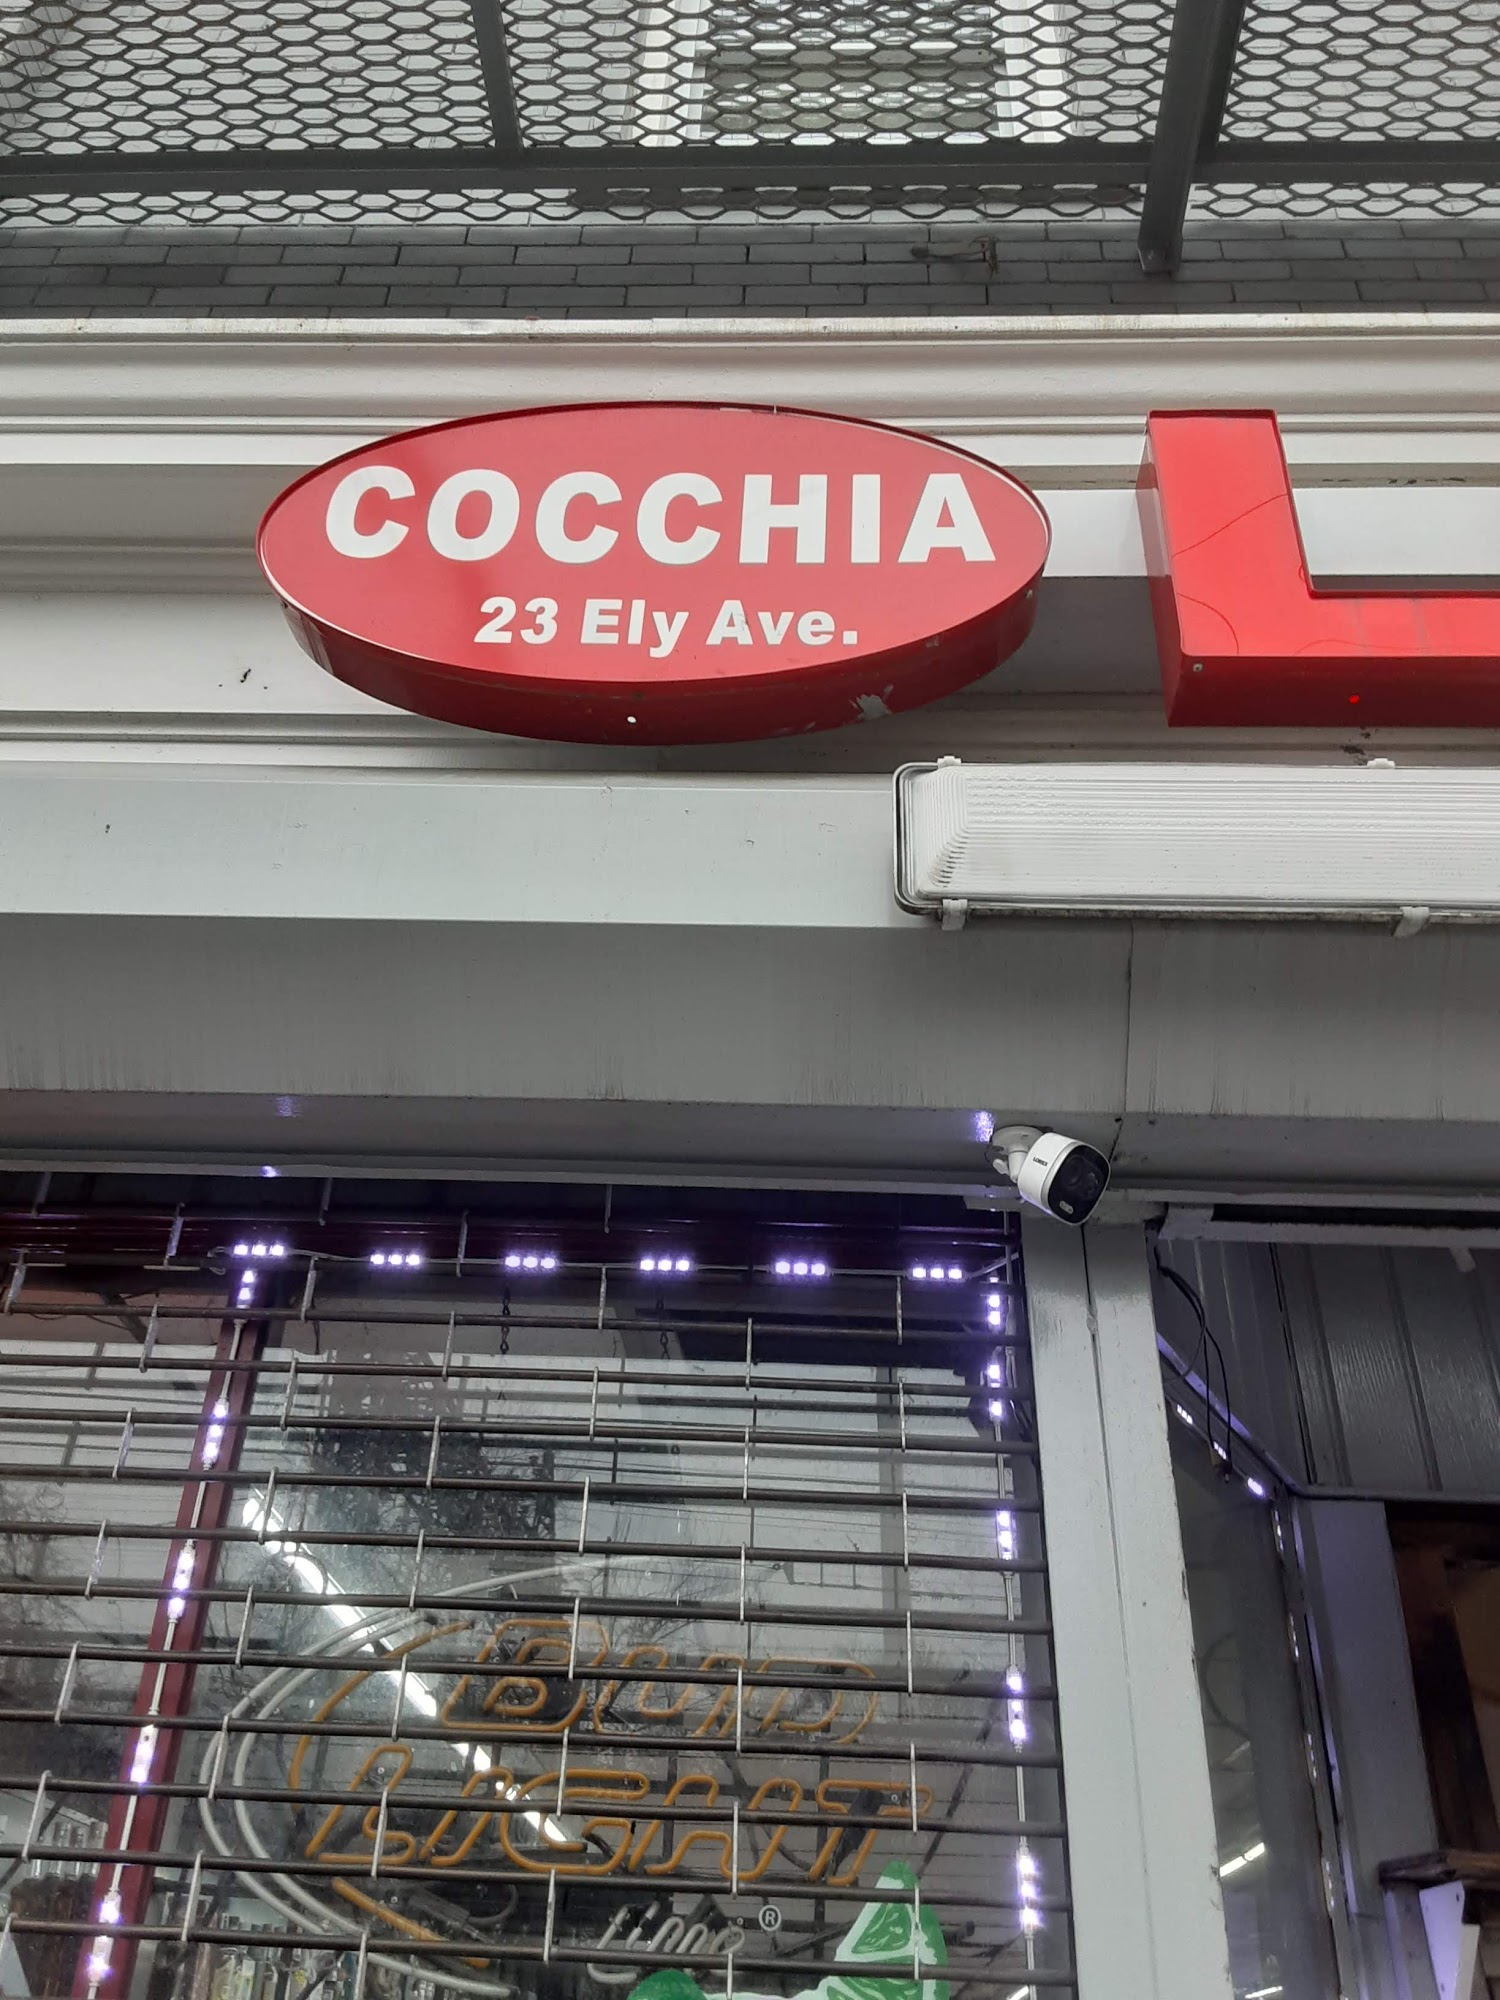 Cocchia's Liquor Store